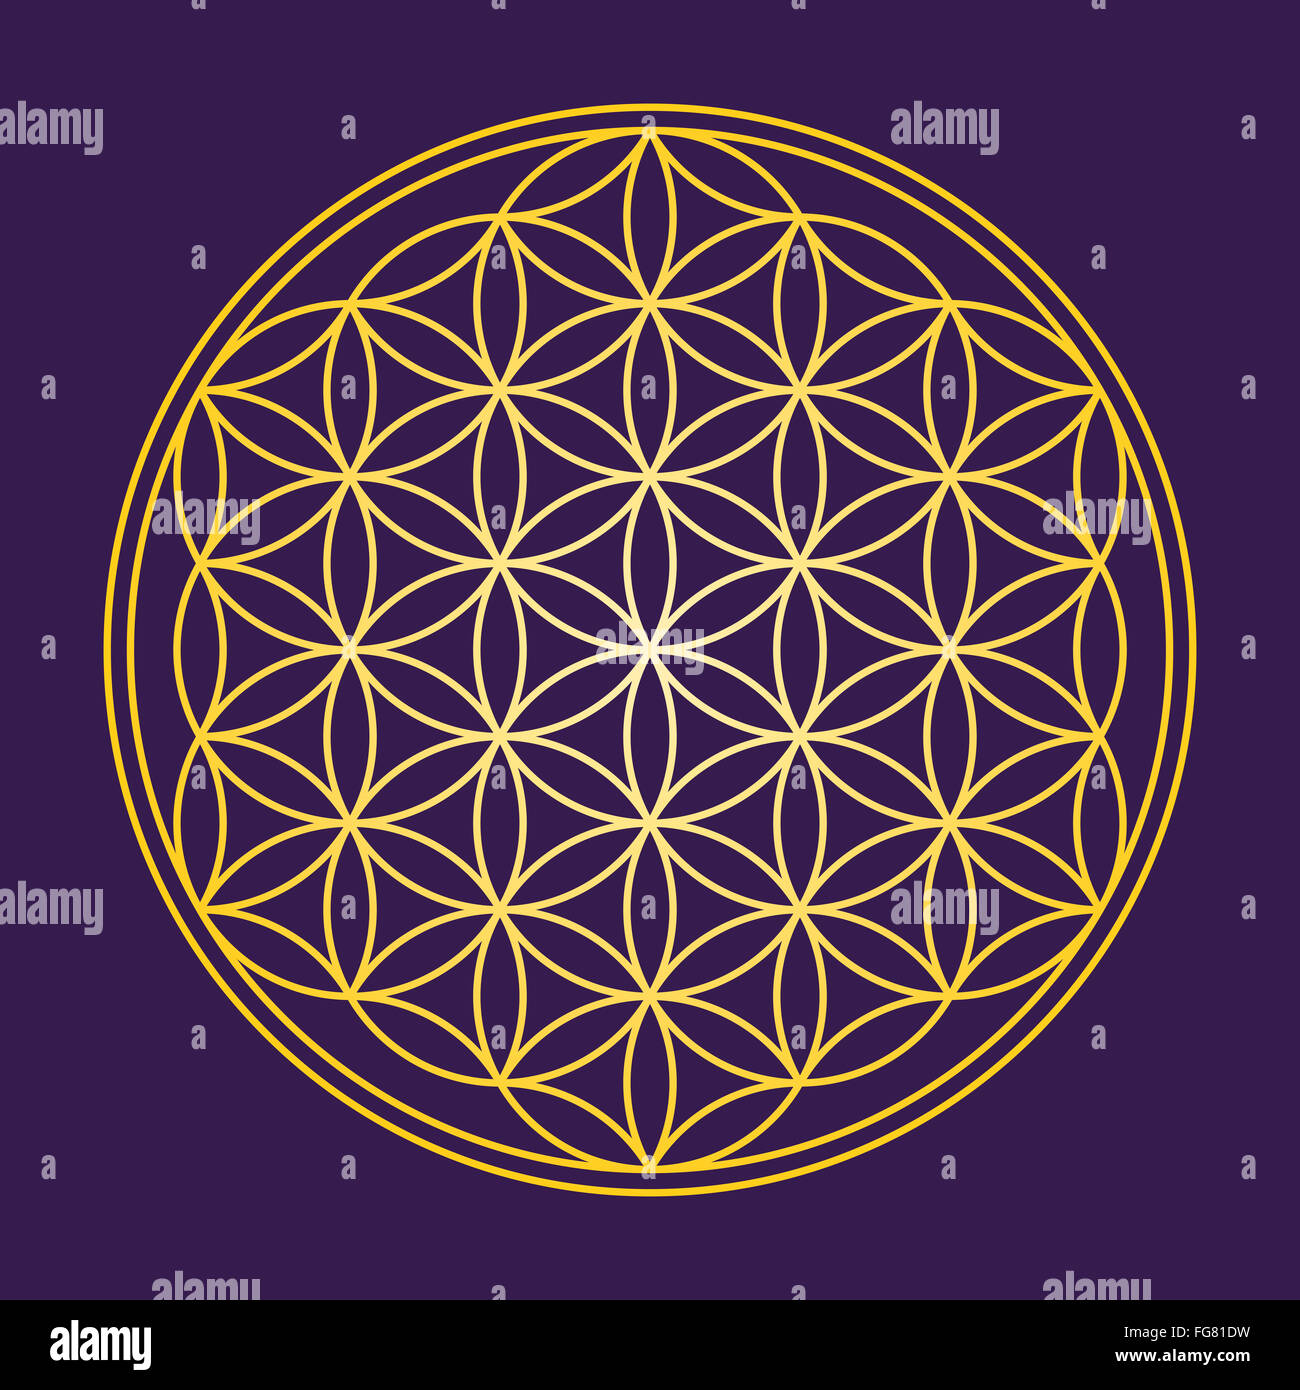 Blume des Lebens - Gold auf dunklem lila Hintergrund - eine geometrische Figur, bestehend aus mehreren gleichmäßig verteilt, überlappende Kreise. Stockfoto